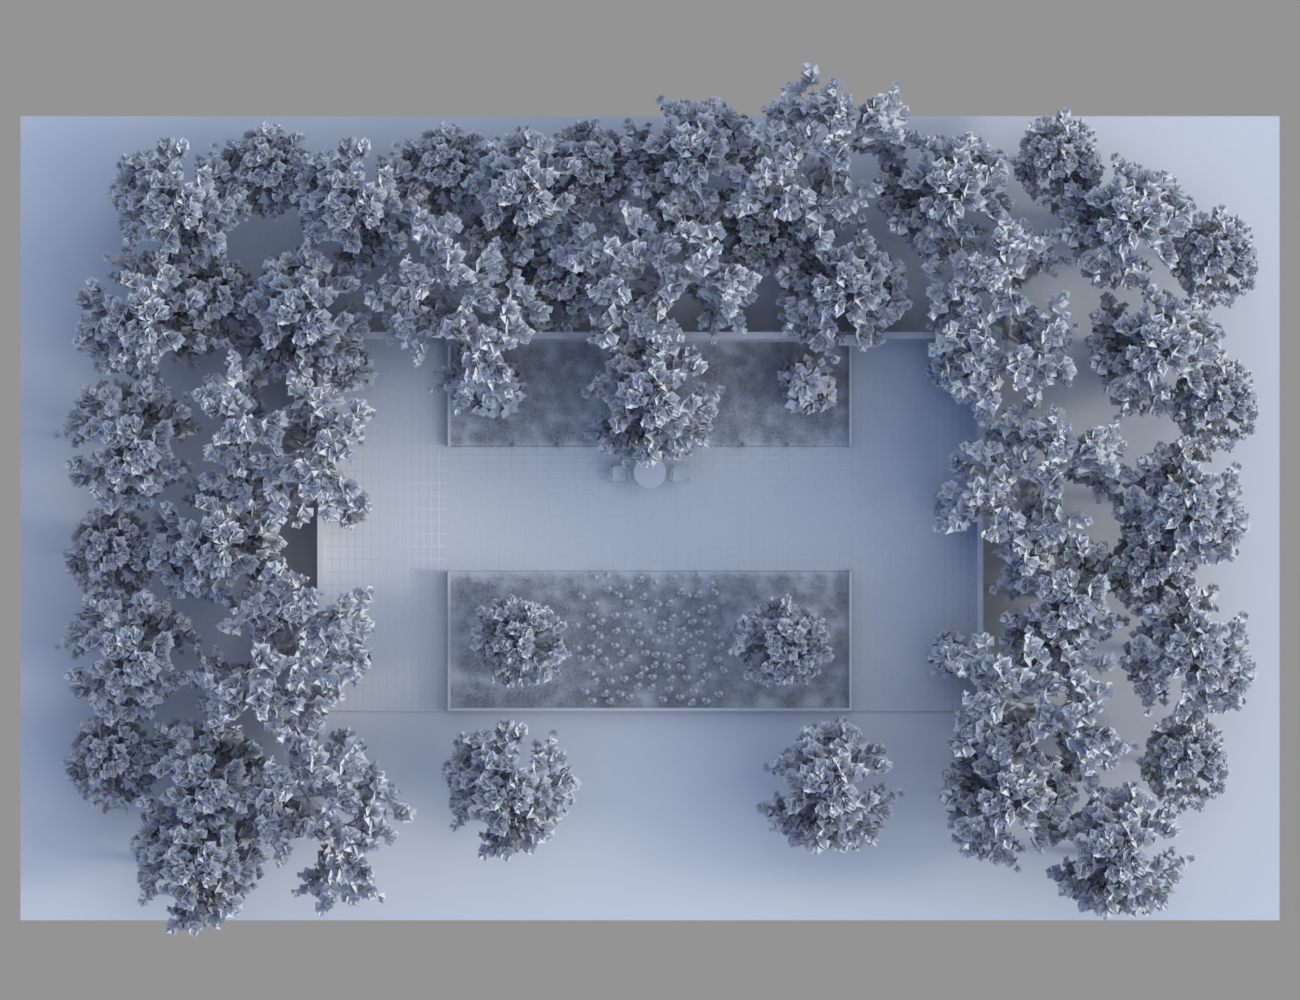 My Little Garden by: JeffersonAF, 3D Models by Daz 3D